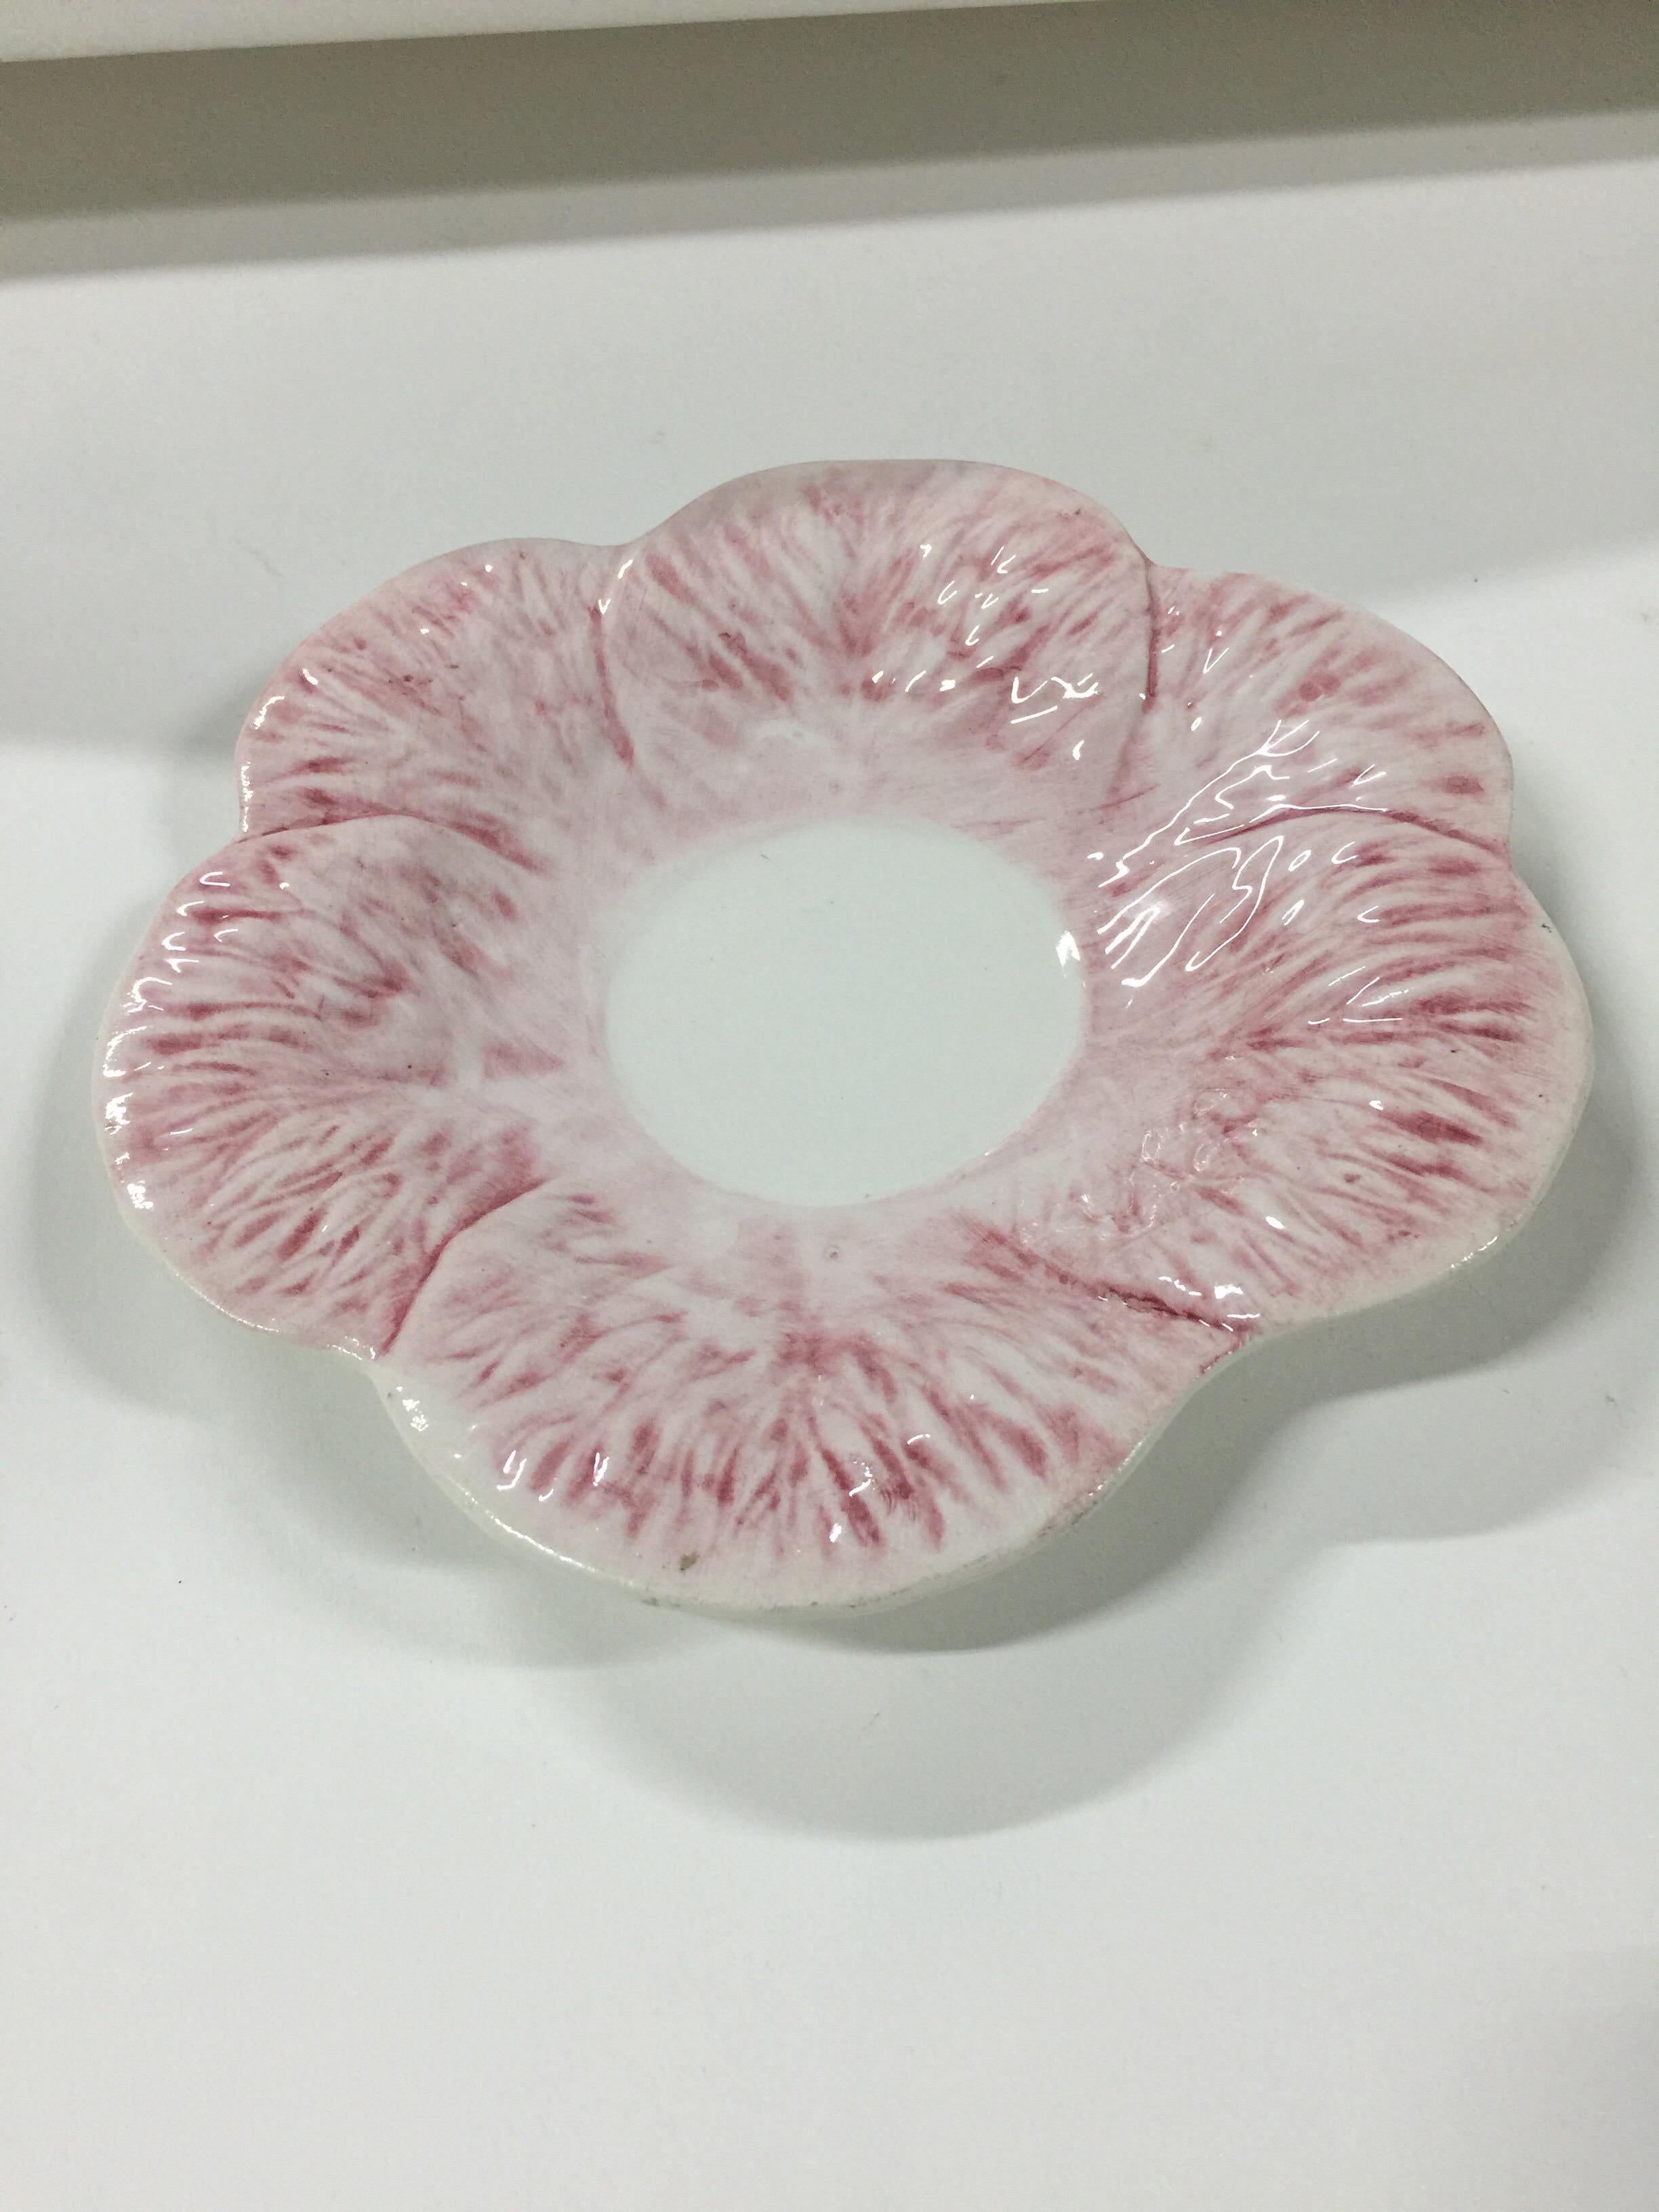 Un plat en porcelaine de Majolique au motif de choux roses par Mottahedeh. Signé. Fabriqué en Italie, vers 1940-1950.

Dimensions : 8 pouces de diamètre.